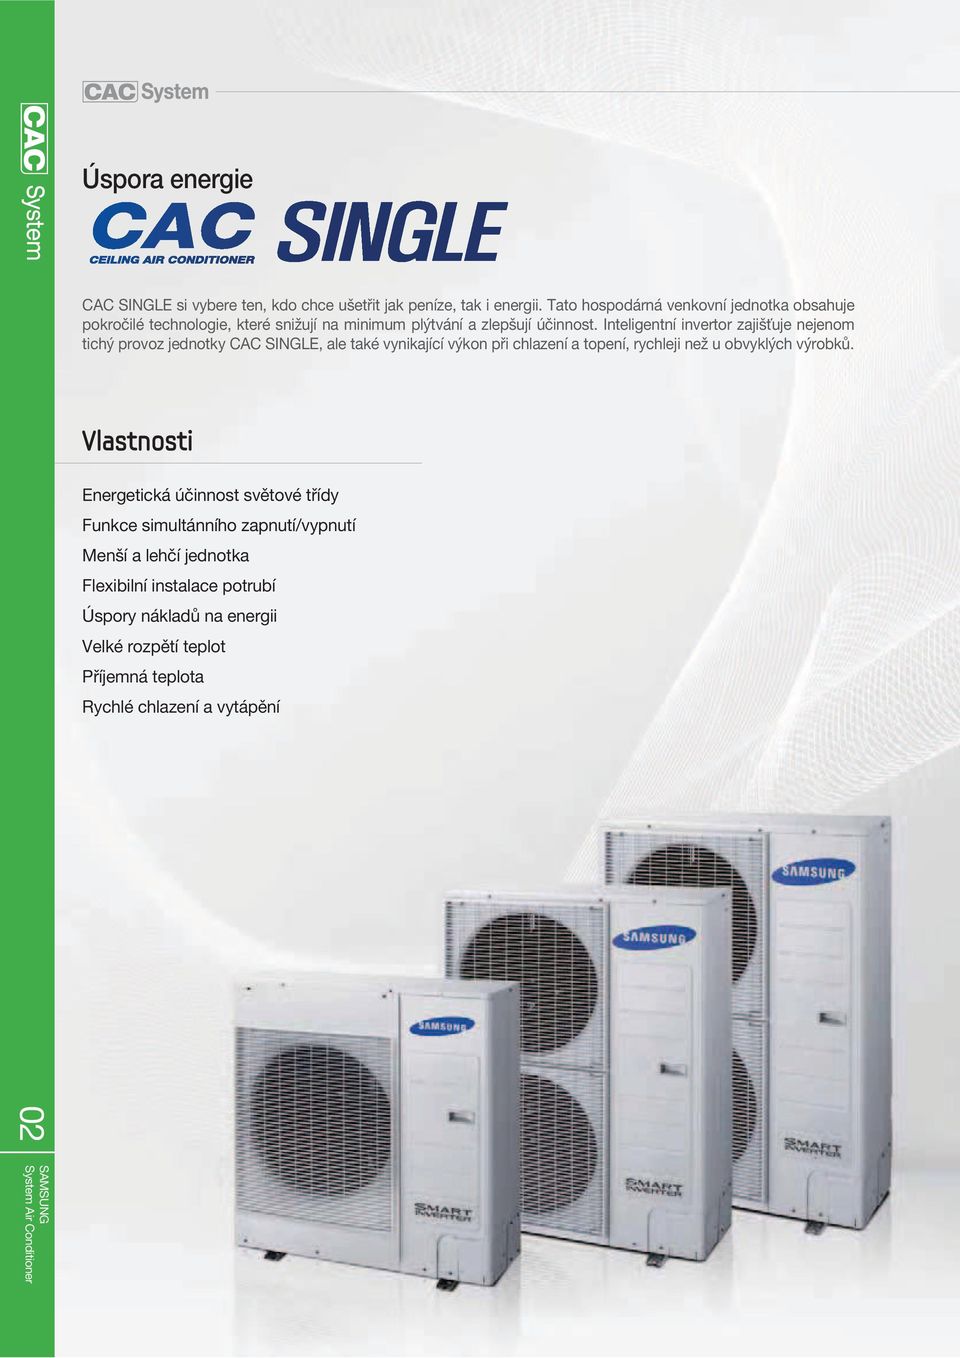 Inteligentní invertor zajišťuje nejenom tichý provoz jednotky CAC SINGLE, ale také vynikající výkon při chlazení a topení, rychleji než u obvyklých